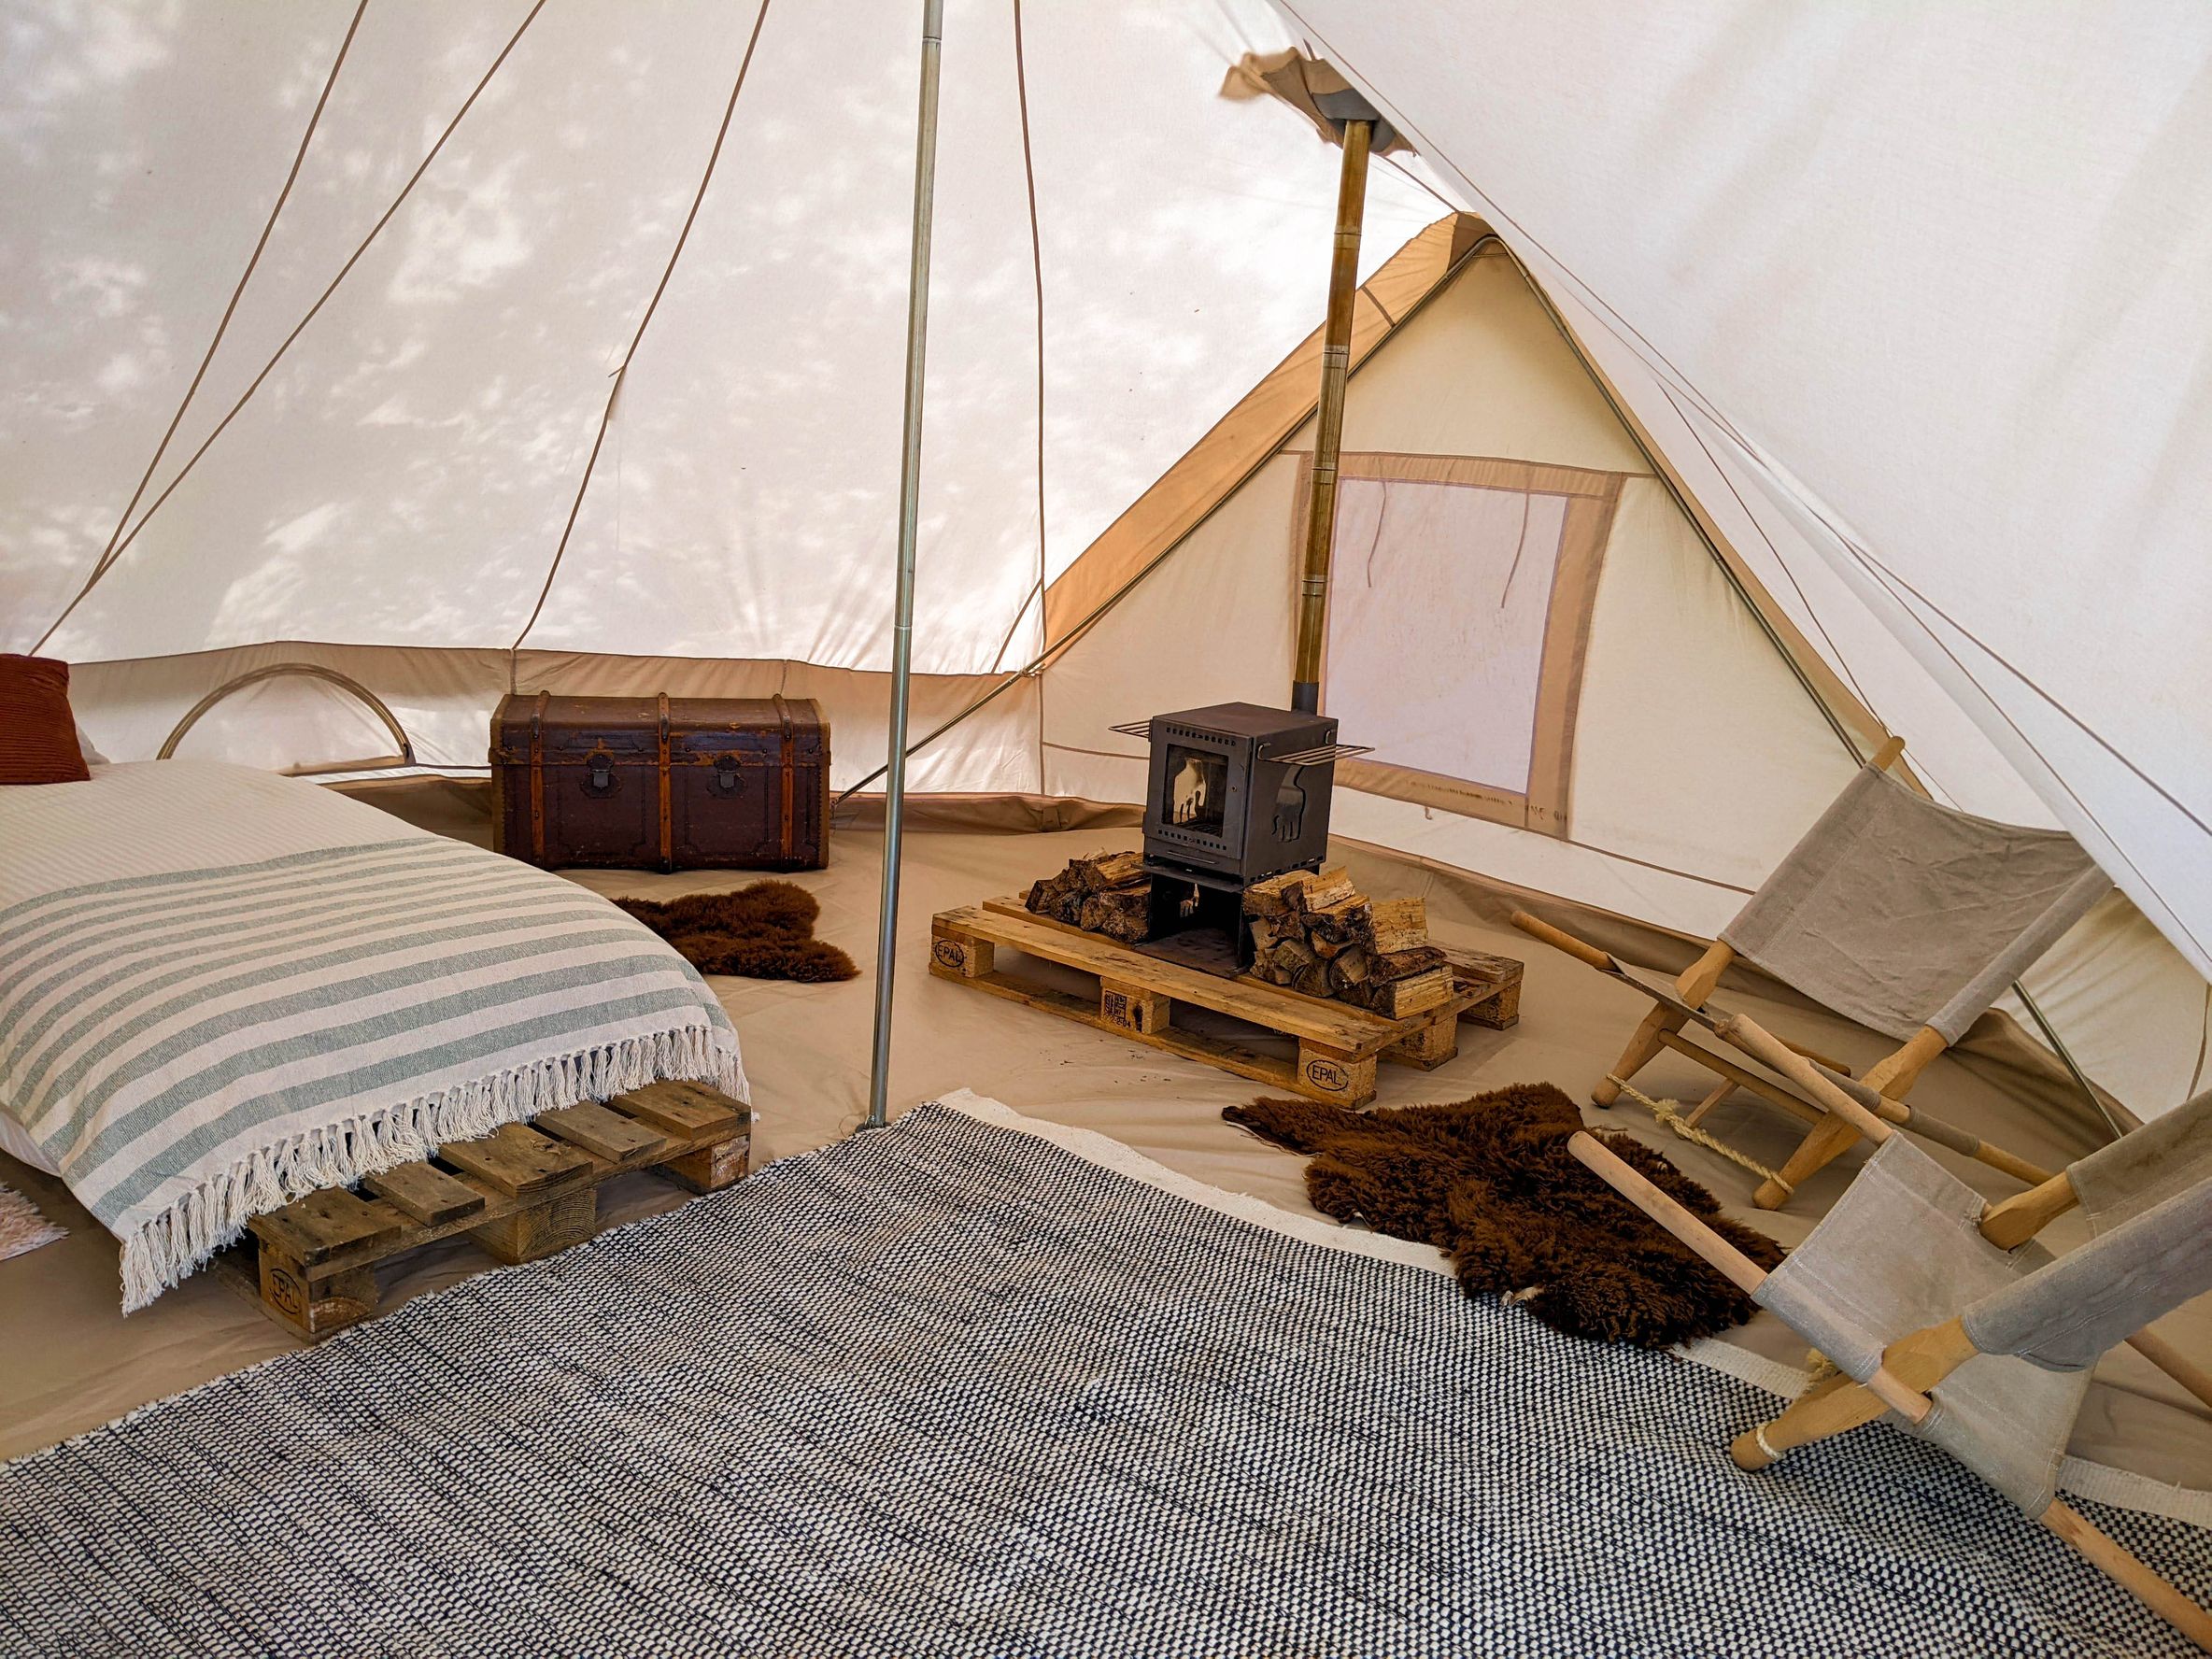 Glamping-Zelt mit Kamin, Liegestühlen und Betten von innen, buchbar bei hinterland.camp